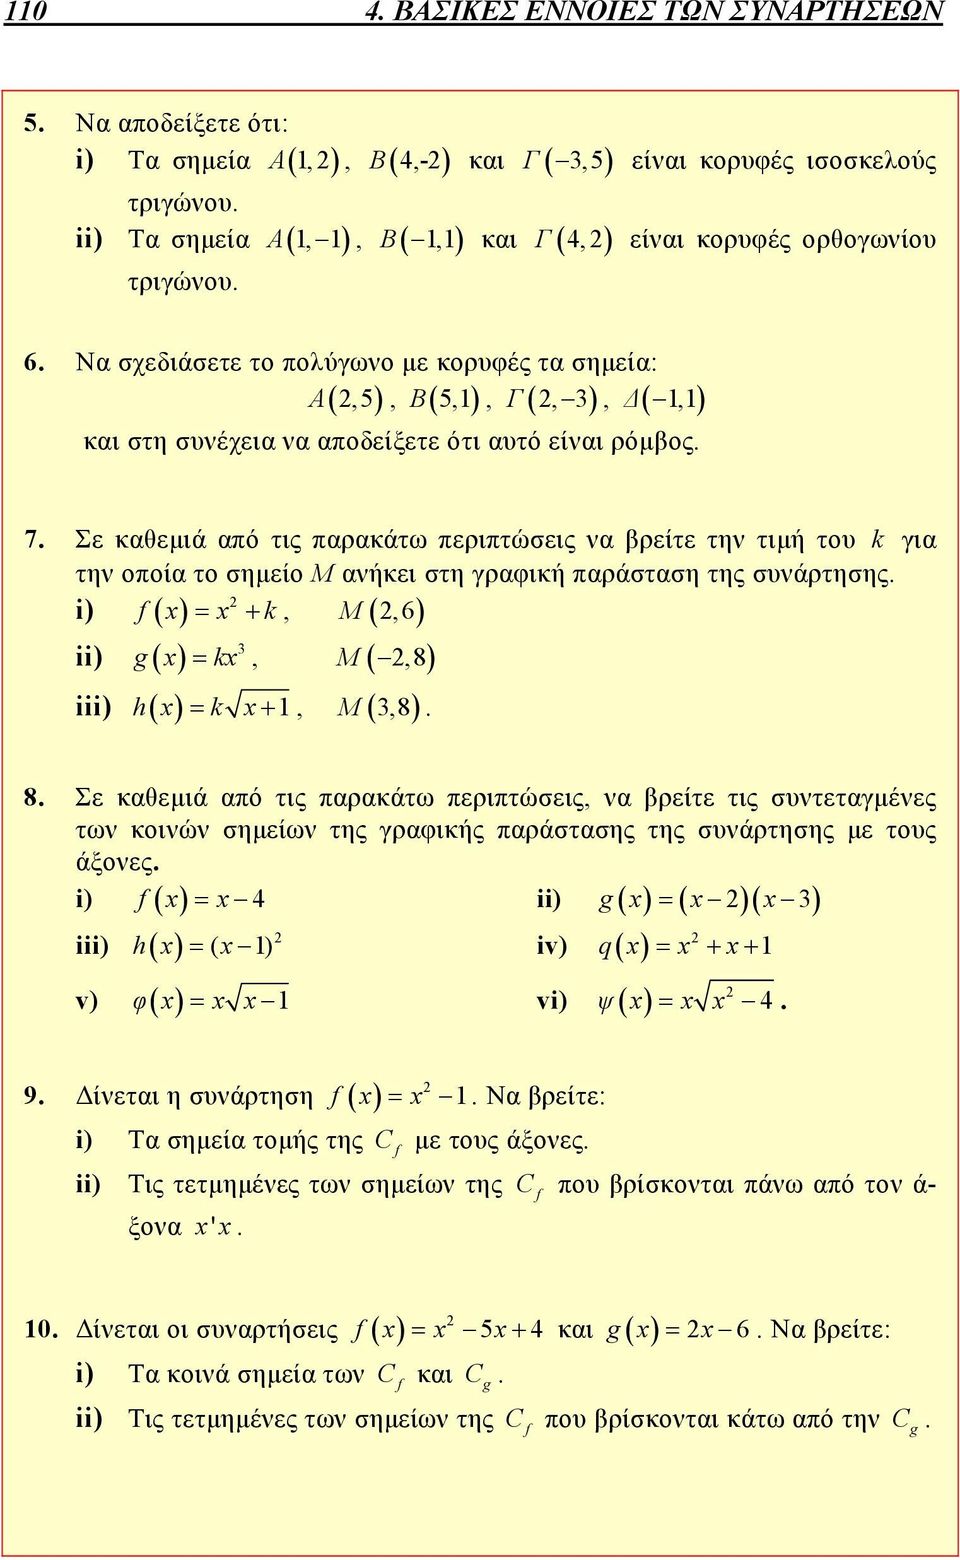 Σε καθεμιά από τις παρακάτω περιπτώσεις να βρείτε την τιμή του k για την οποία το σημείο Μ ανήκει στη γραφική παράσταση της συνάρτησης. i) x x k, Μ,6 ii) 3 g x kx, Μ,8 iii) hx k x, 3,8 Μ. 8.